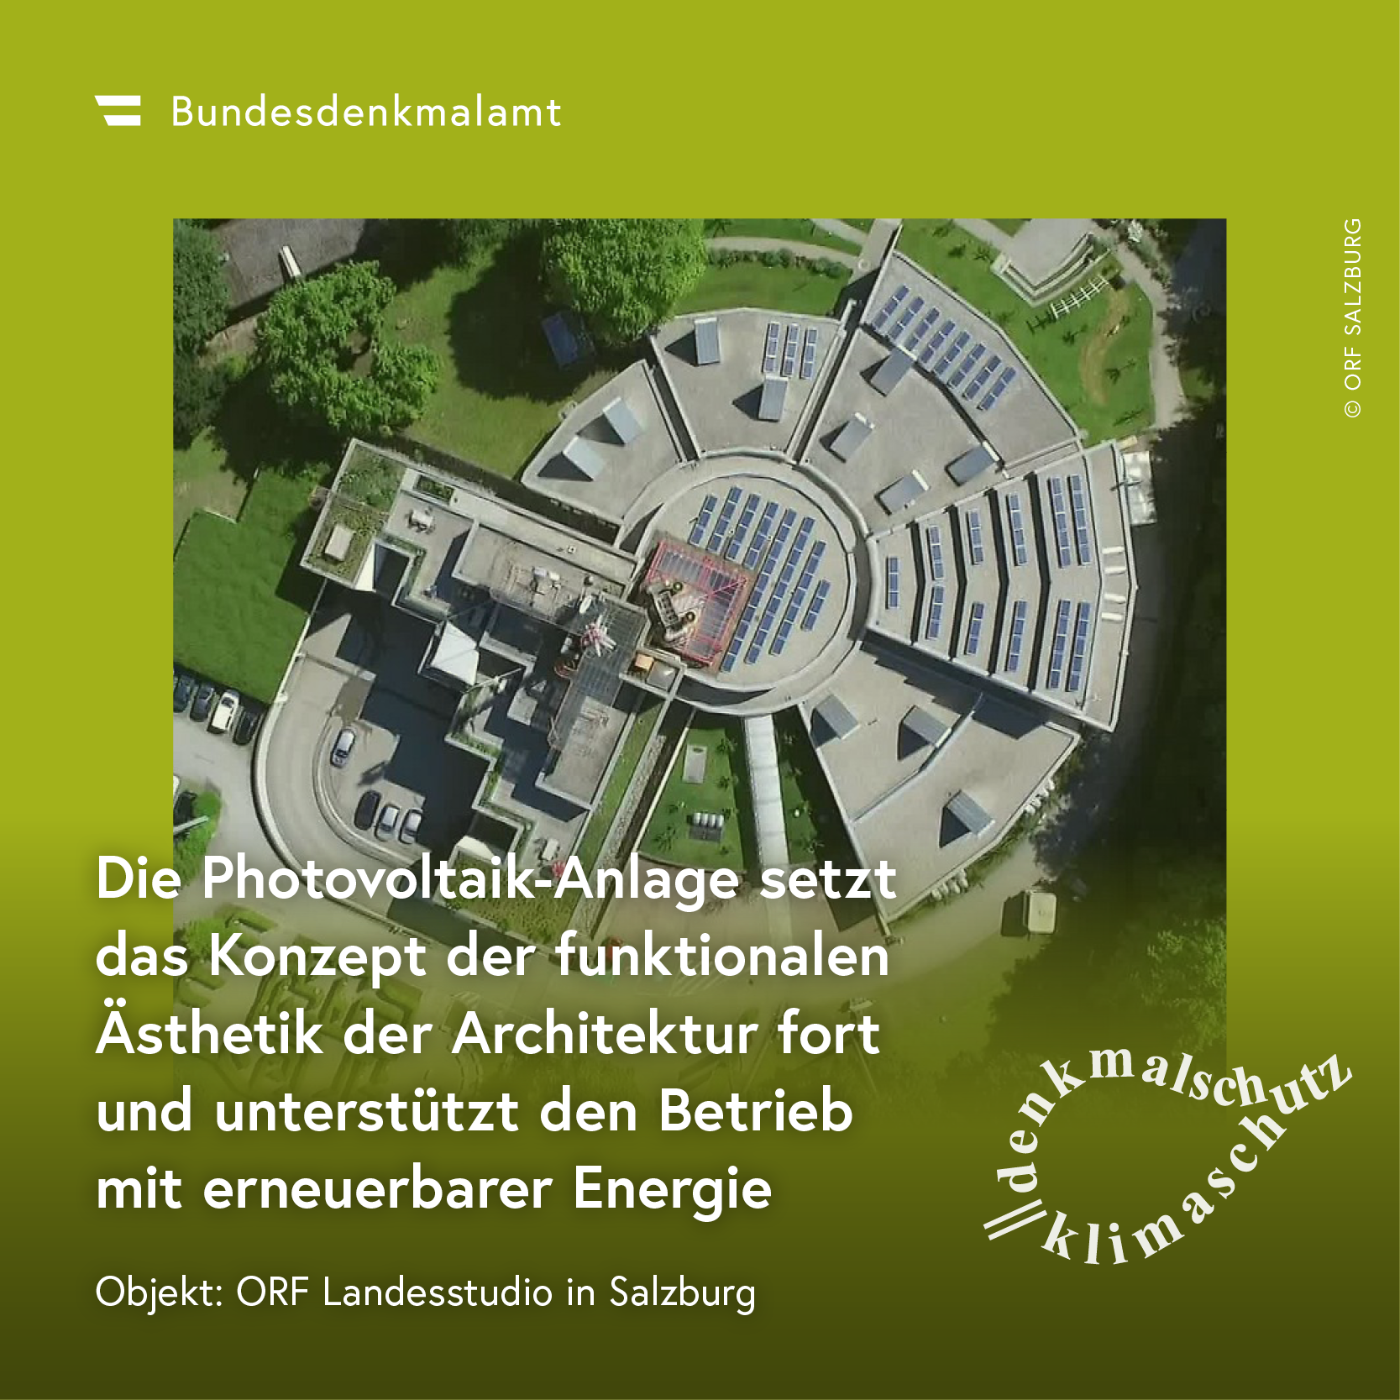 Sujet der Kampagne "Denkmalschutz ist Klimaschutz" - ORF Landesstudio Salzburg (Salzburg)